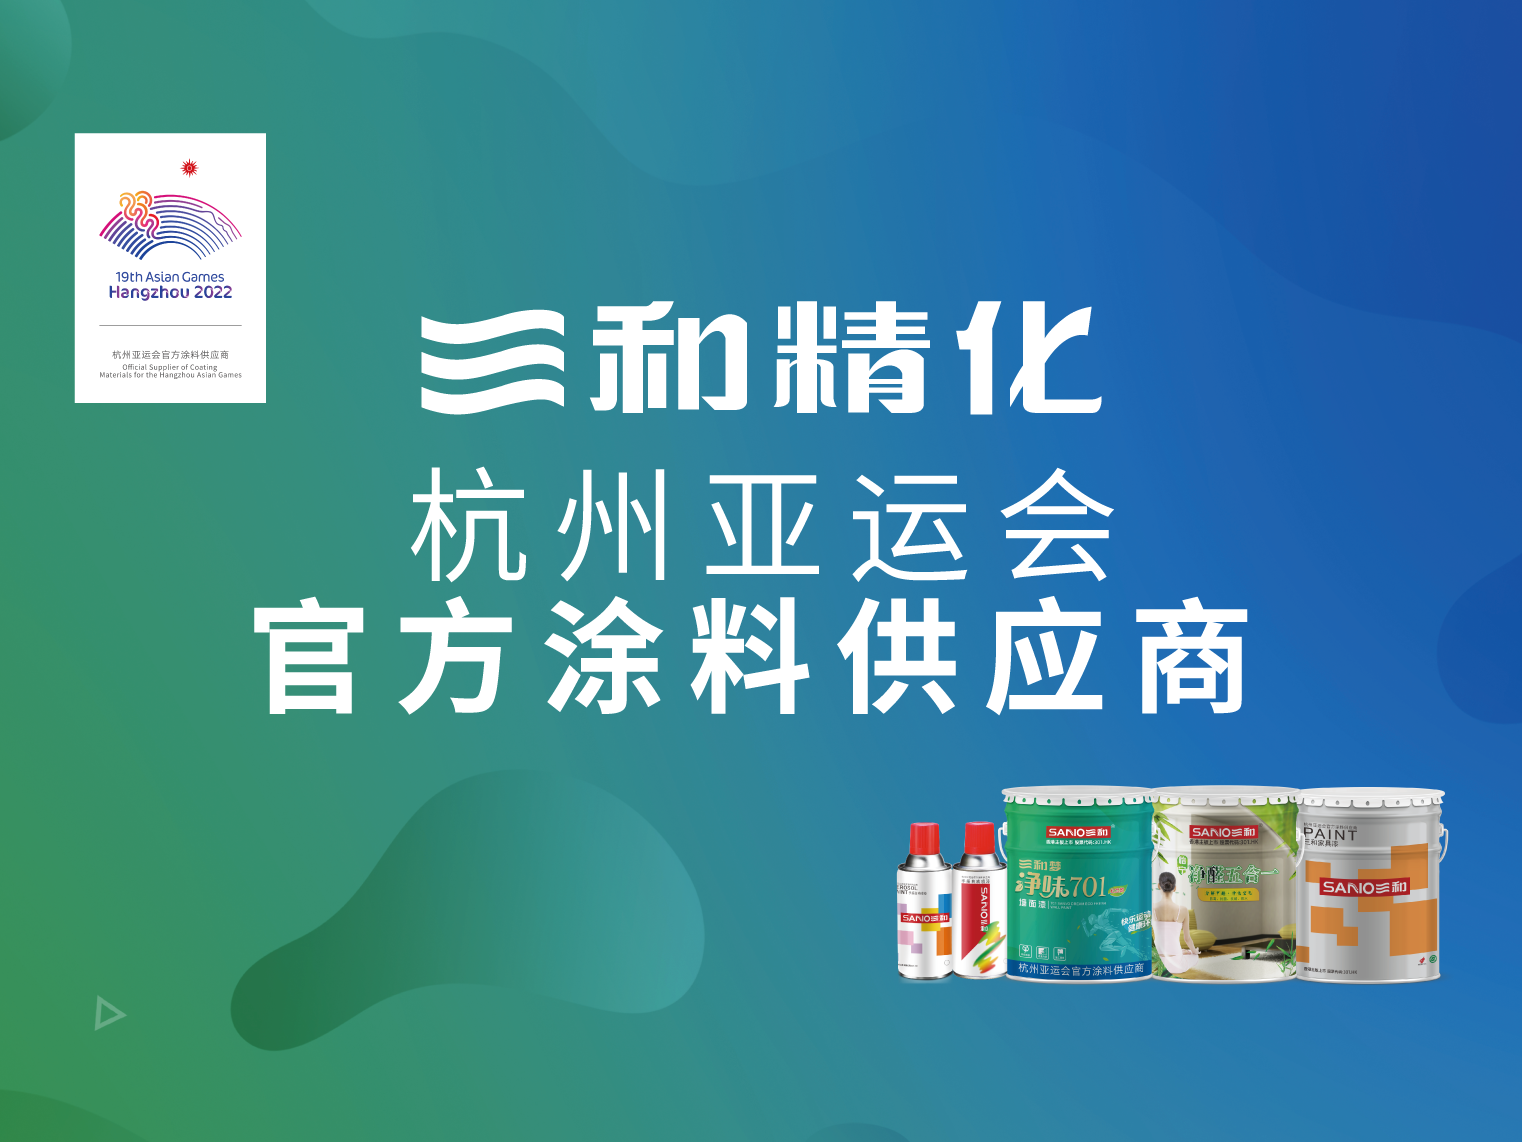 三和精化杭州亚运会官方涂料供应商